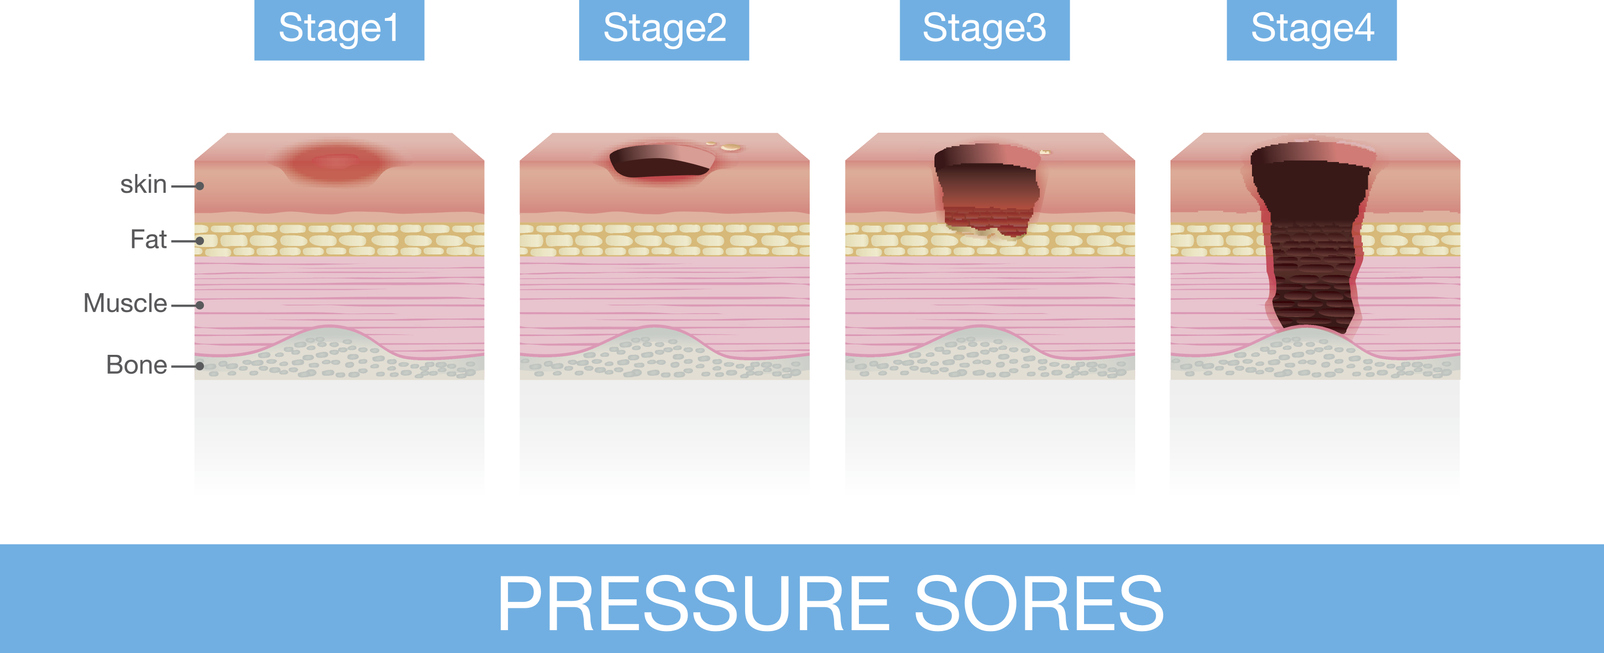 Medical diagram of pressure sores